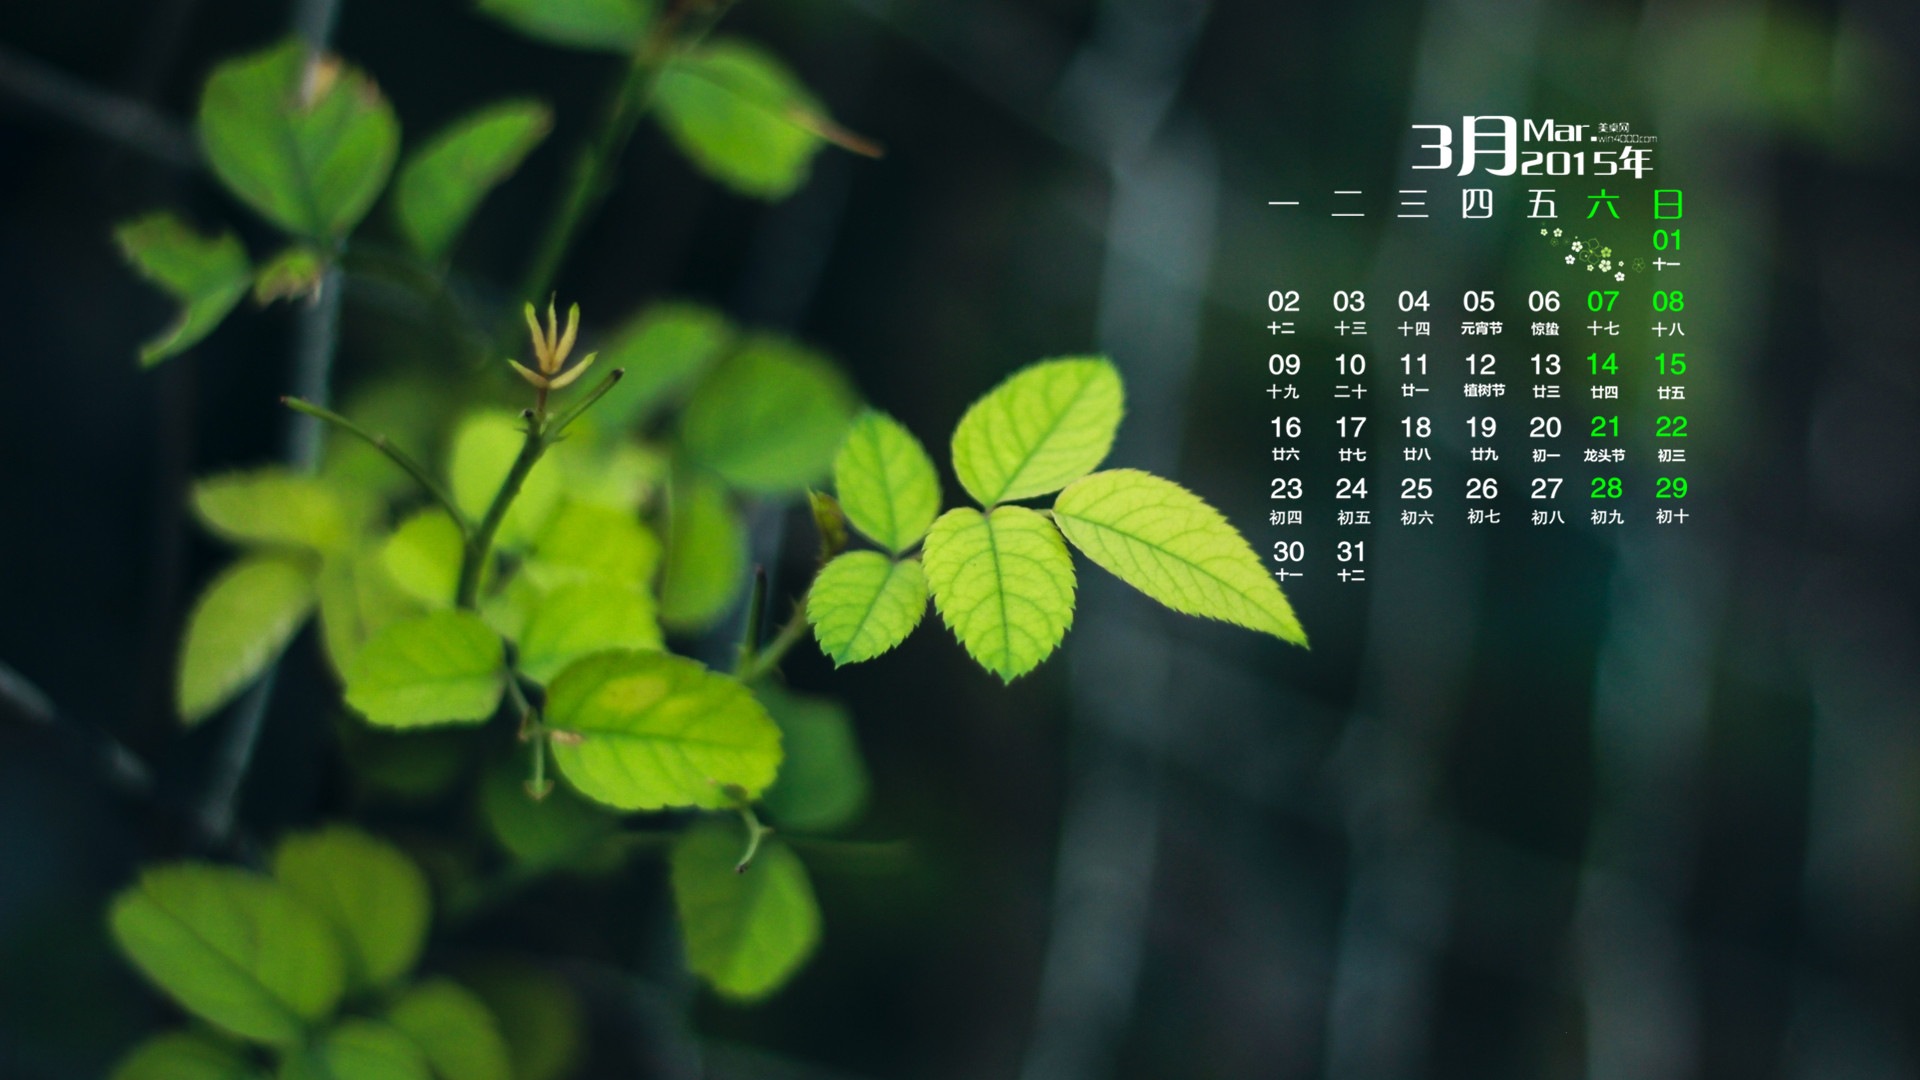 Март 2015 Календарь обои (1) #19 - 1920x1080